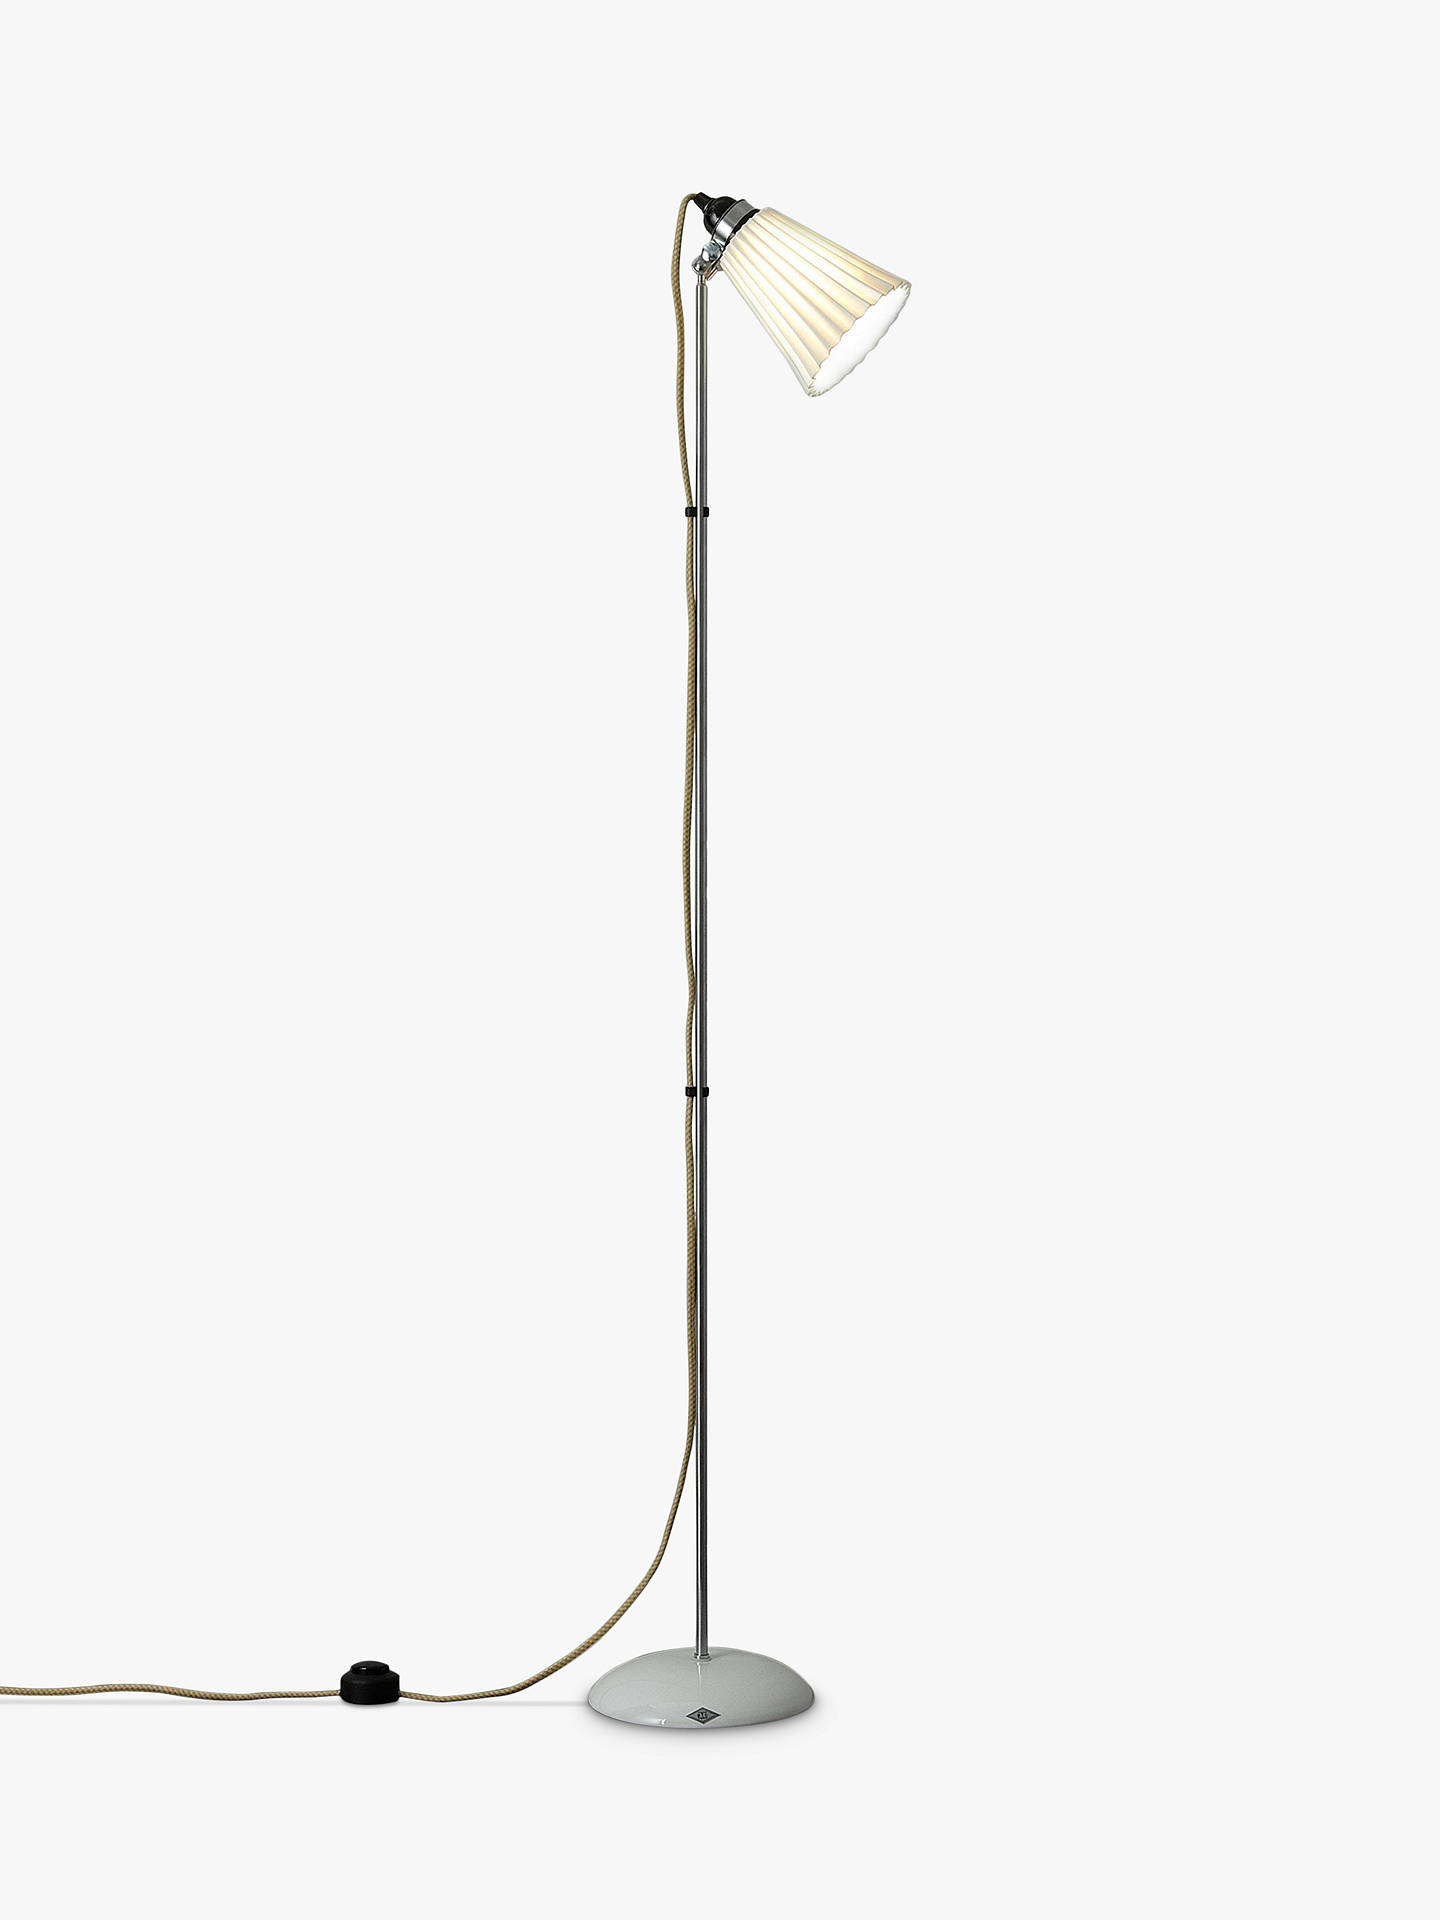 Original Btc Hector Pleat Floor Lamp Lights In 2019 with regard to size 1440 X 1920